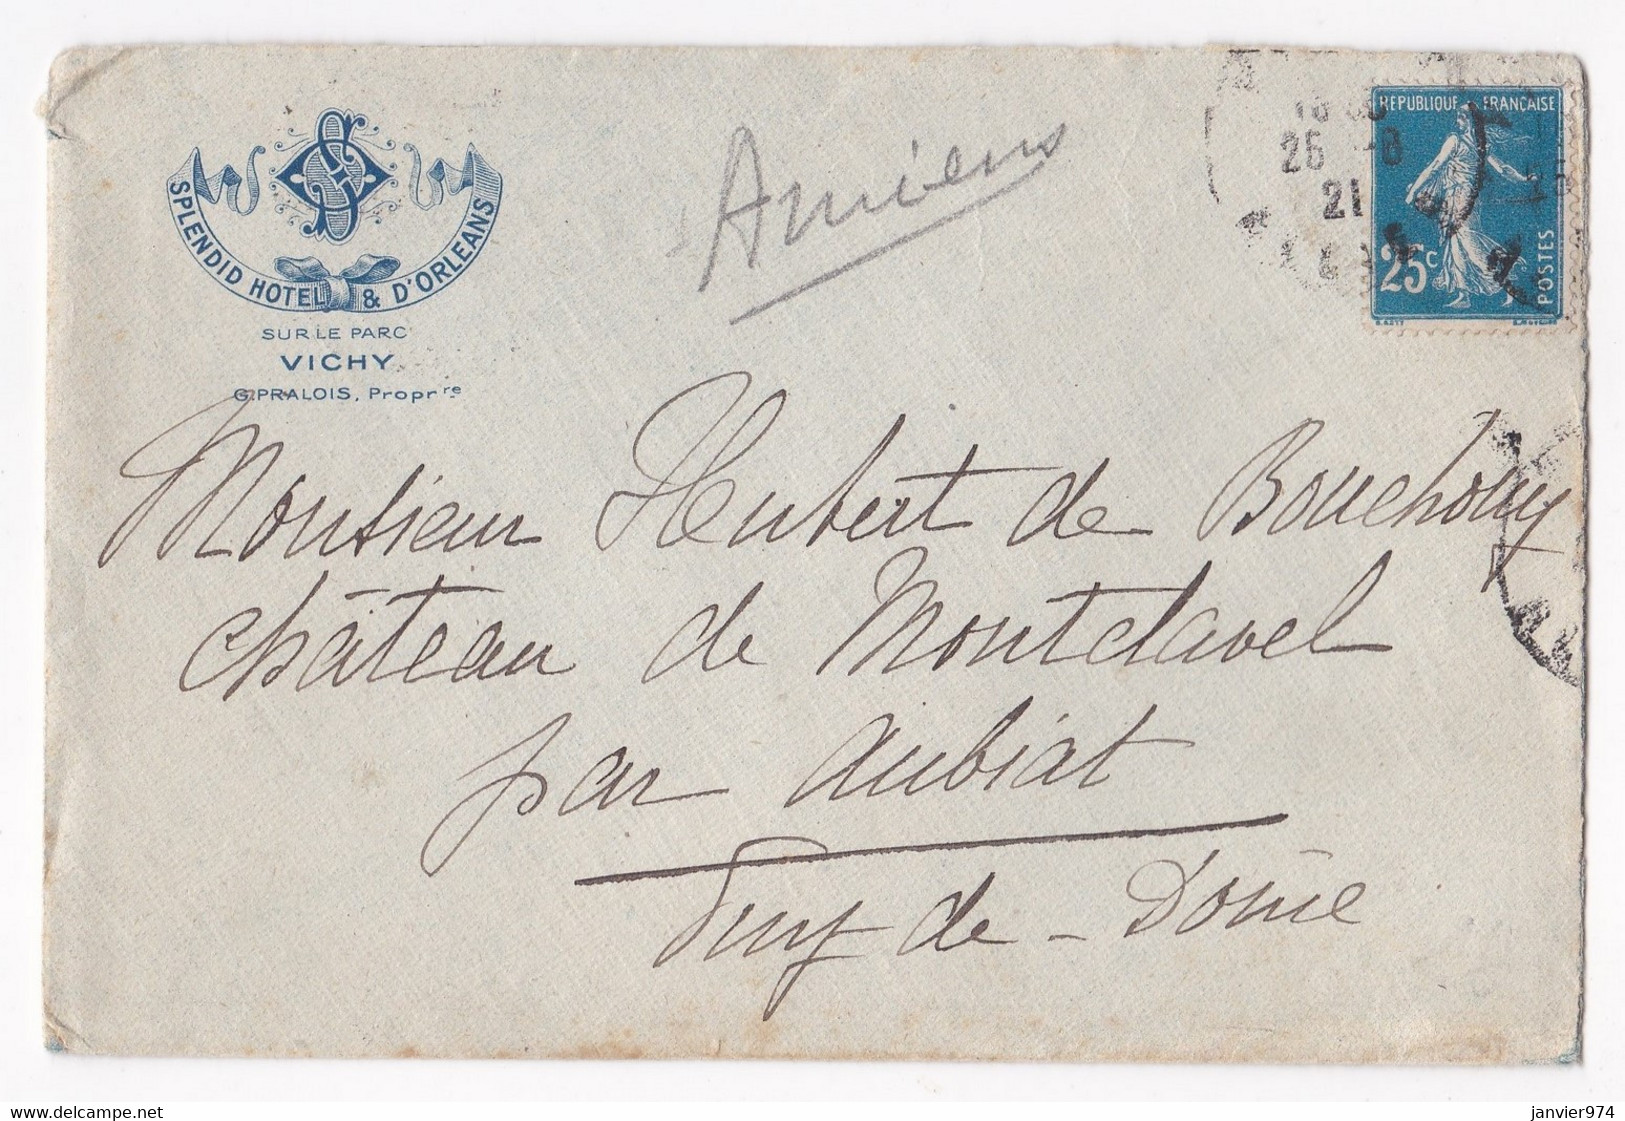 Enveloppe 1921, Splendid Hôtel & D’Orléans Vichy Pour Le Château De Montclavel Aubiat - Lettres & Documents